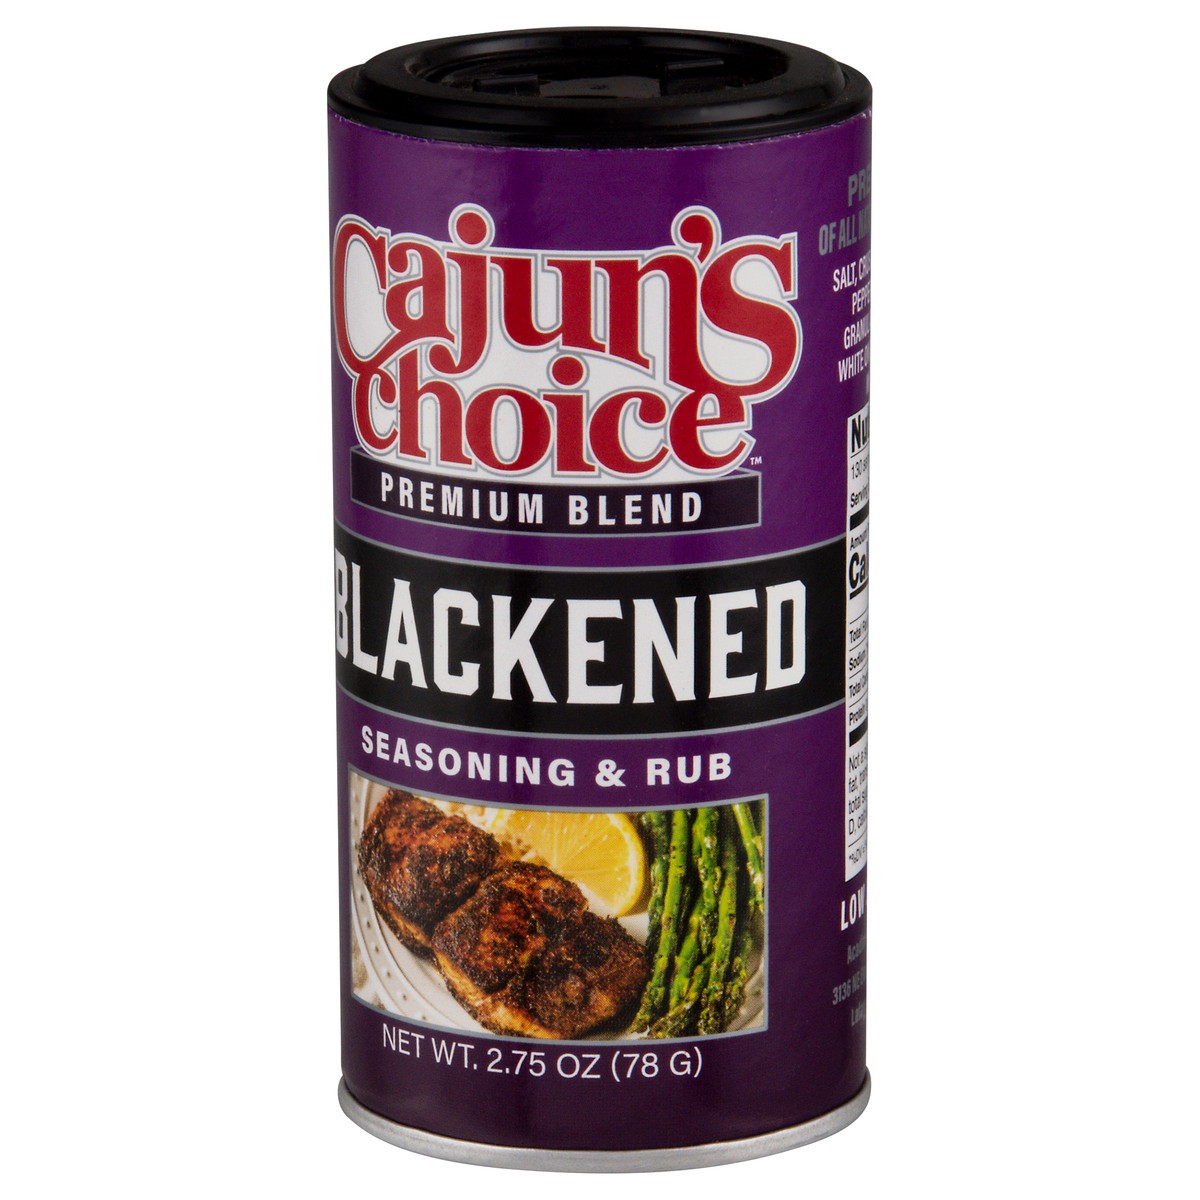 slide 3 of 9, Cajun's Choice Premium Blend Blackened Seasoning & Rub 2.75 oz, 2.75 oz